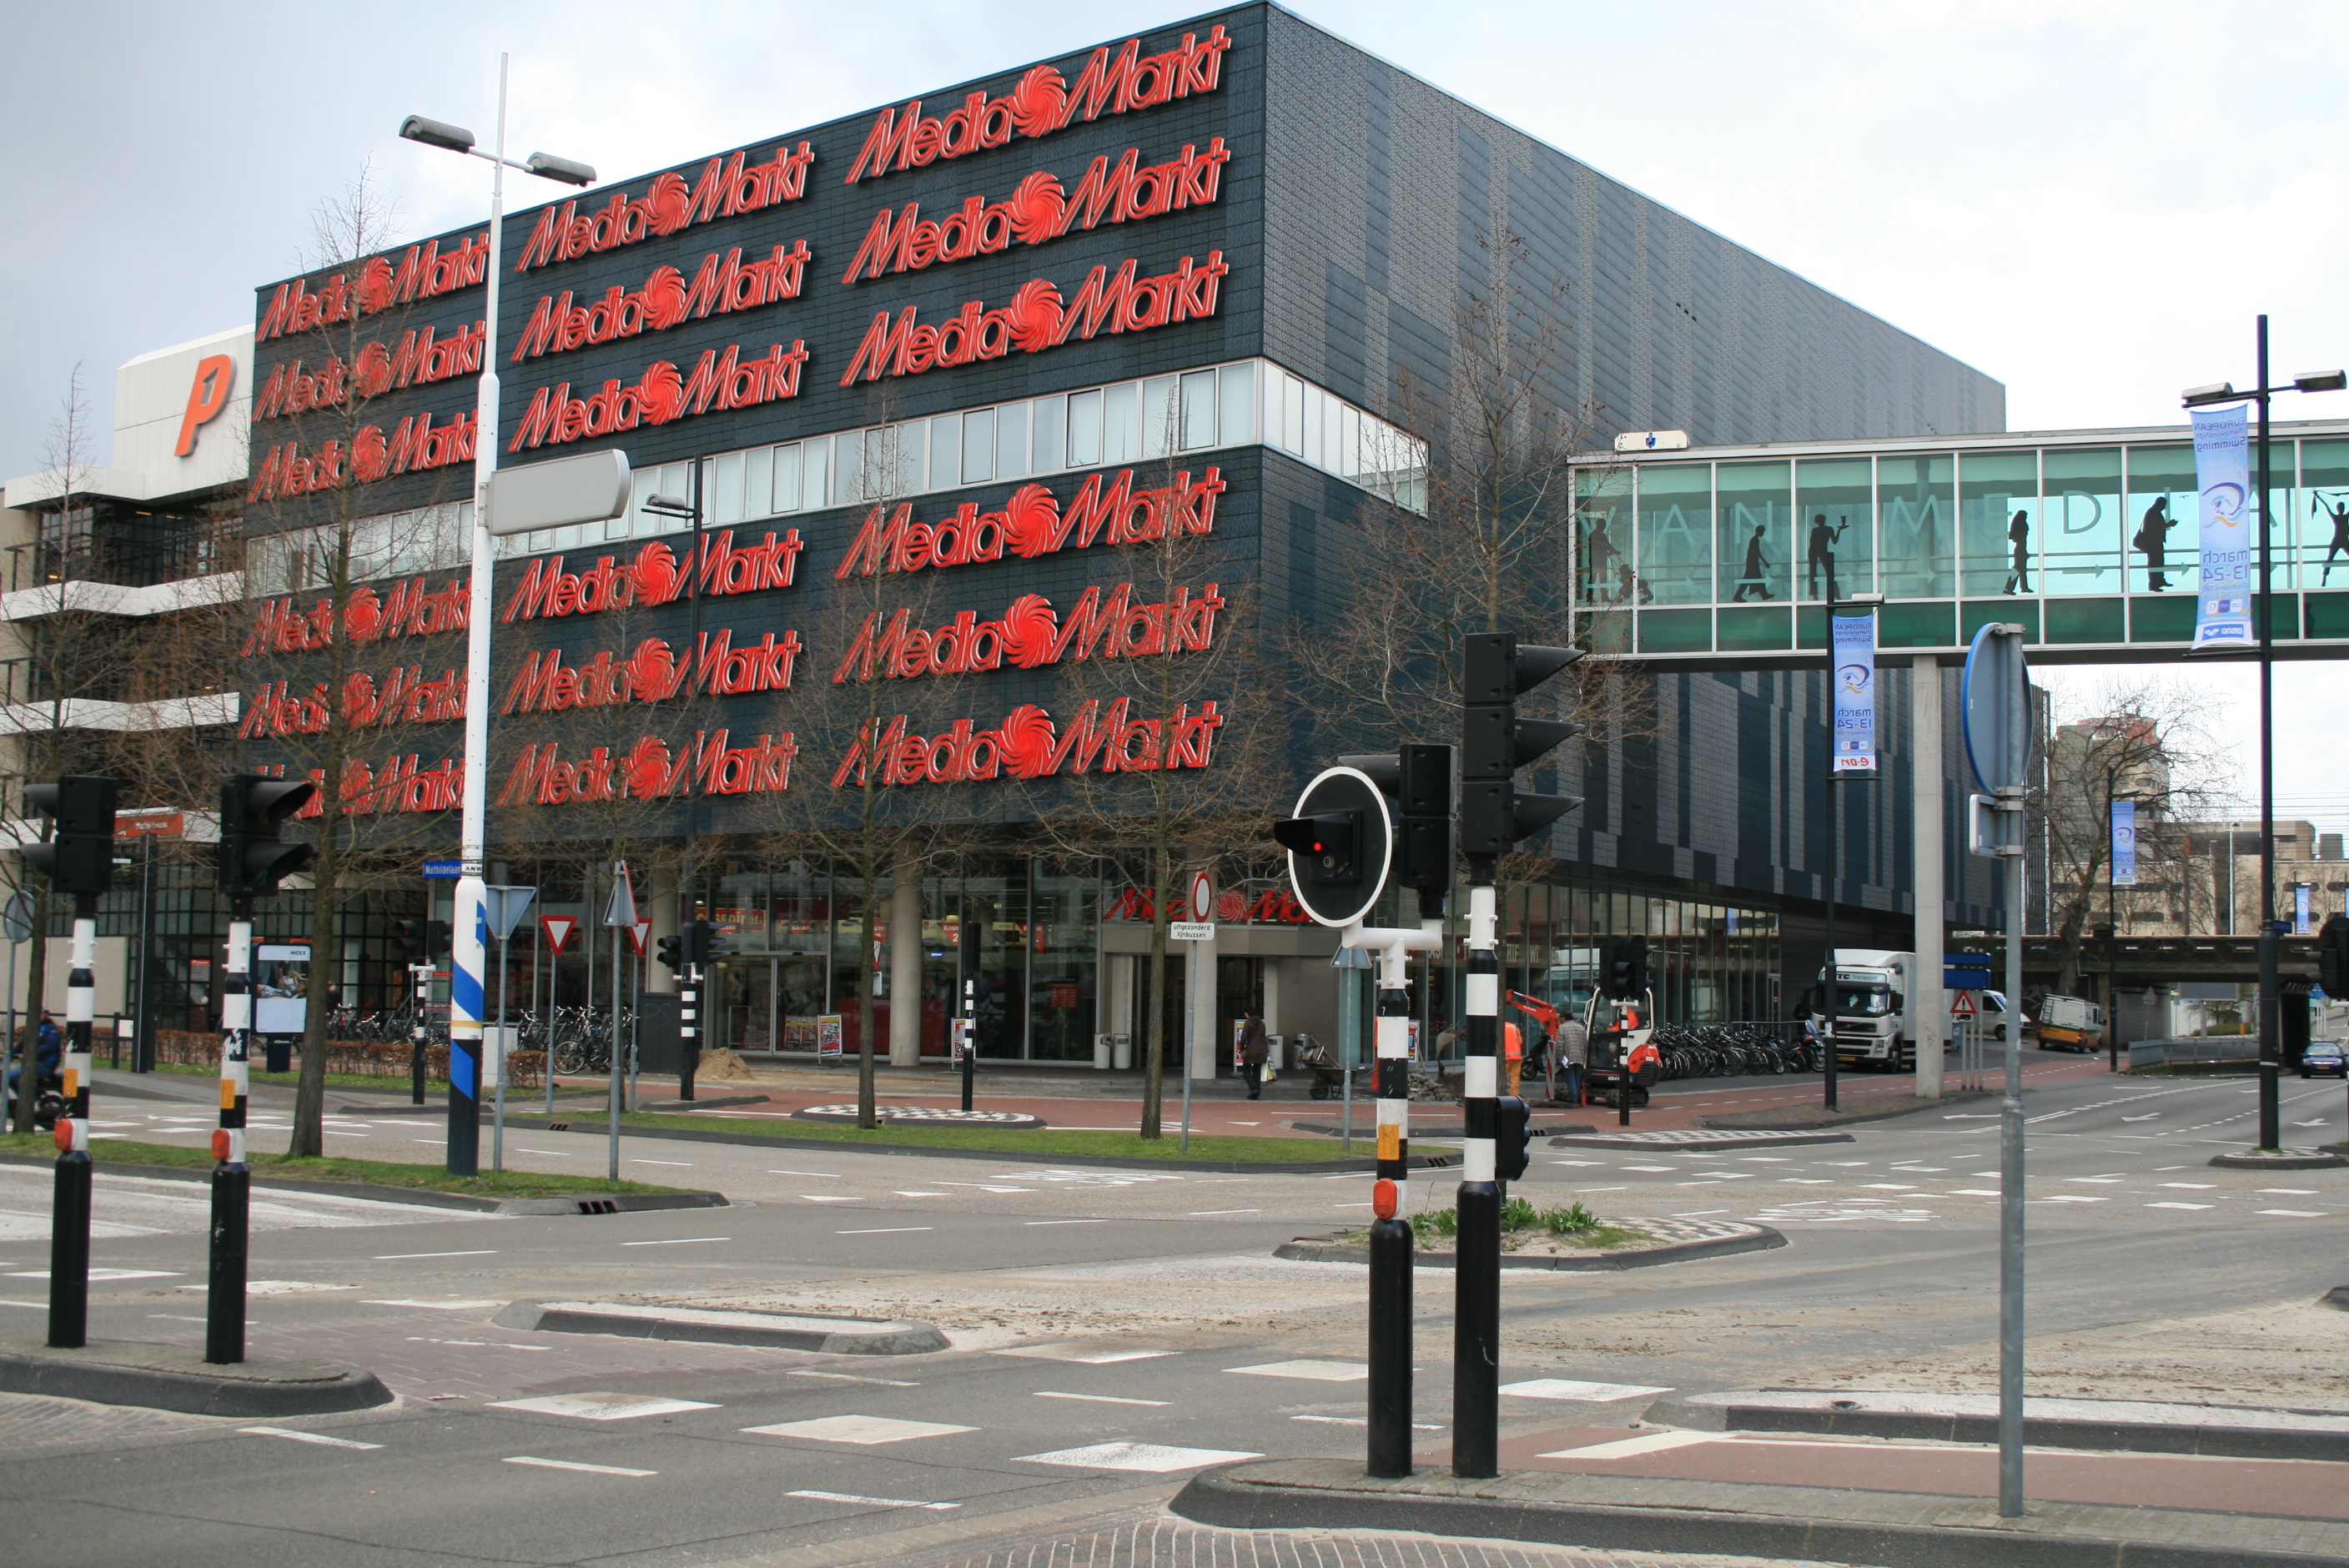 Eindhoven - Mediamarkt, Stefan de Graaf